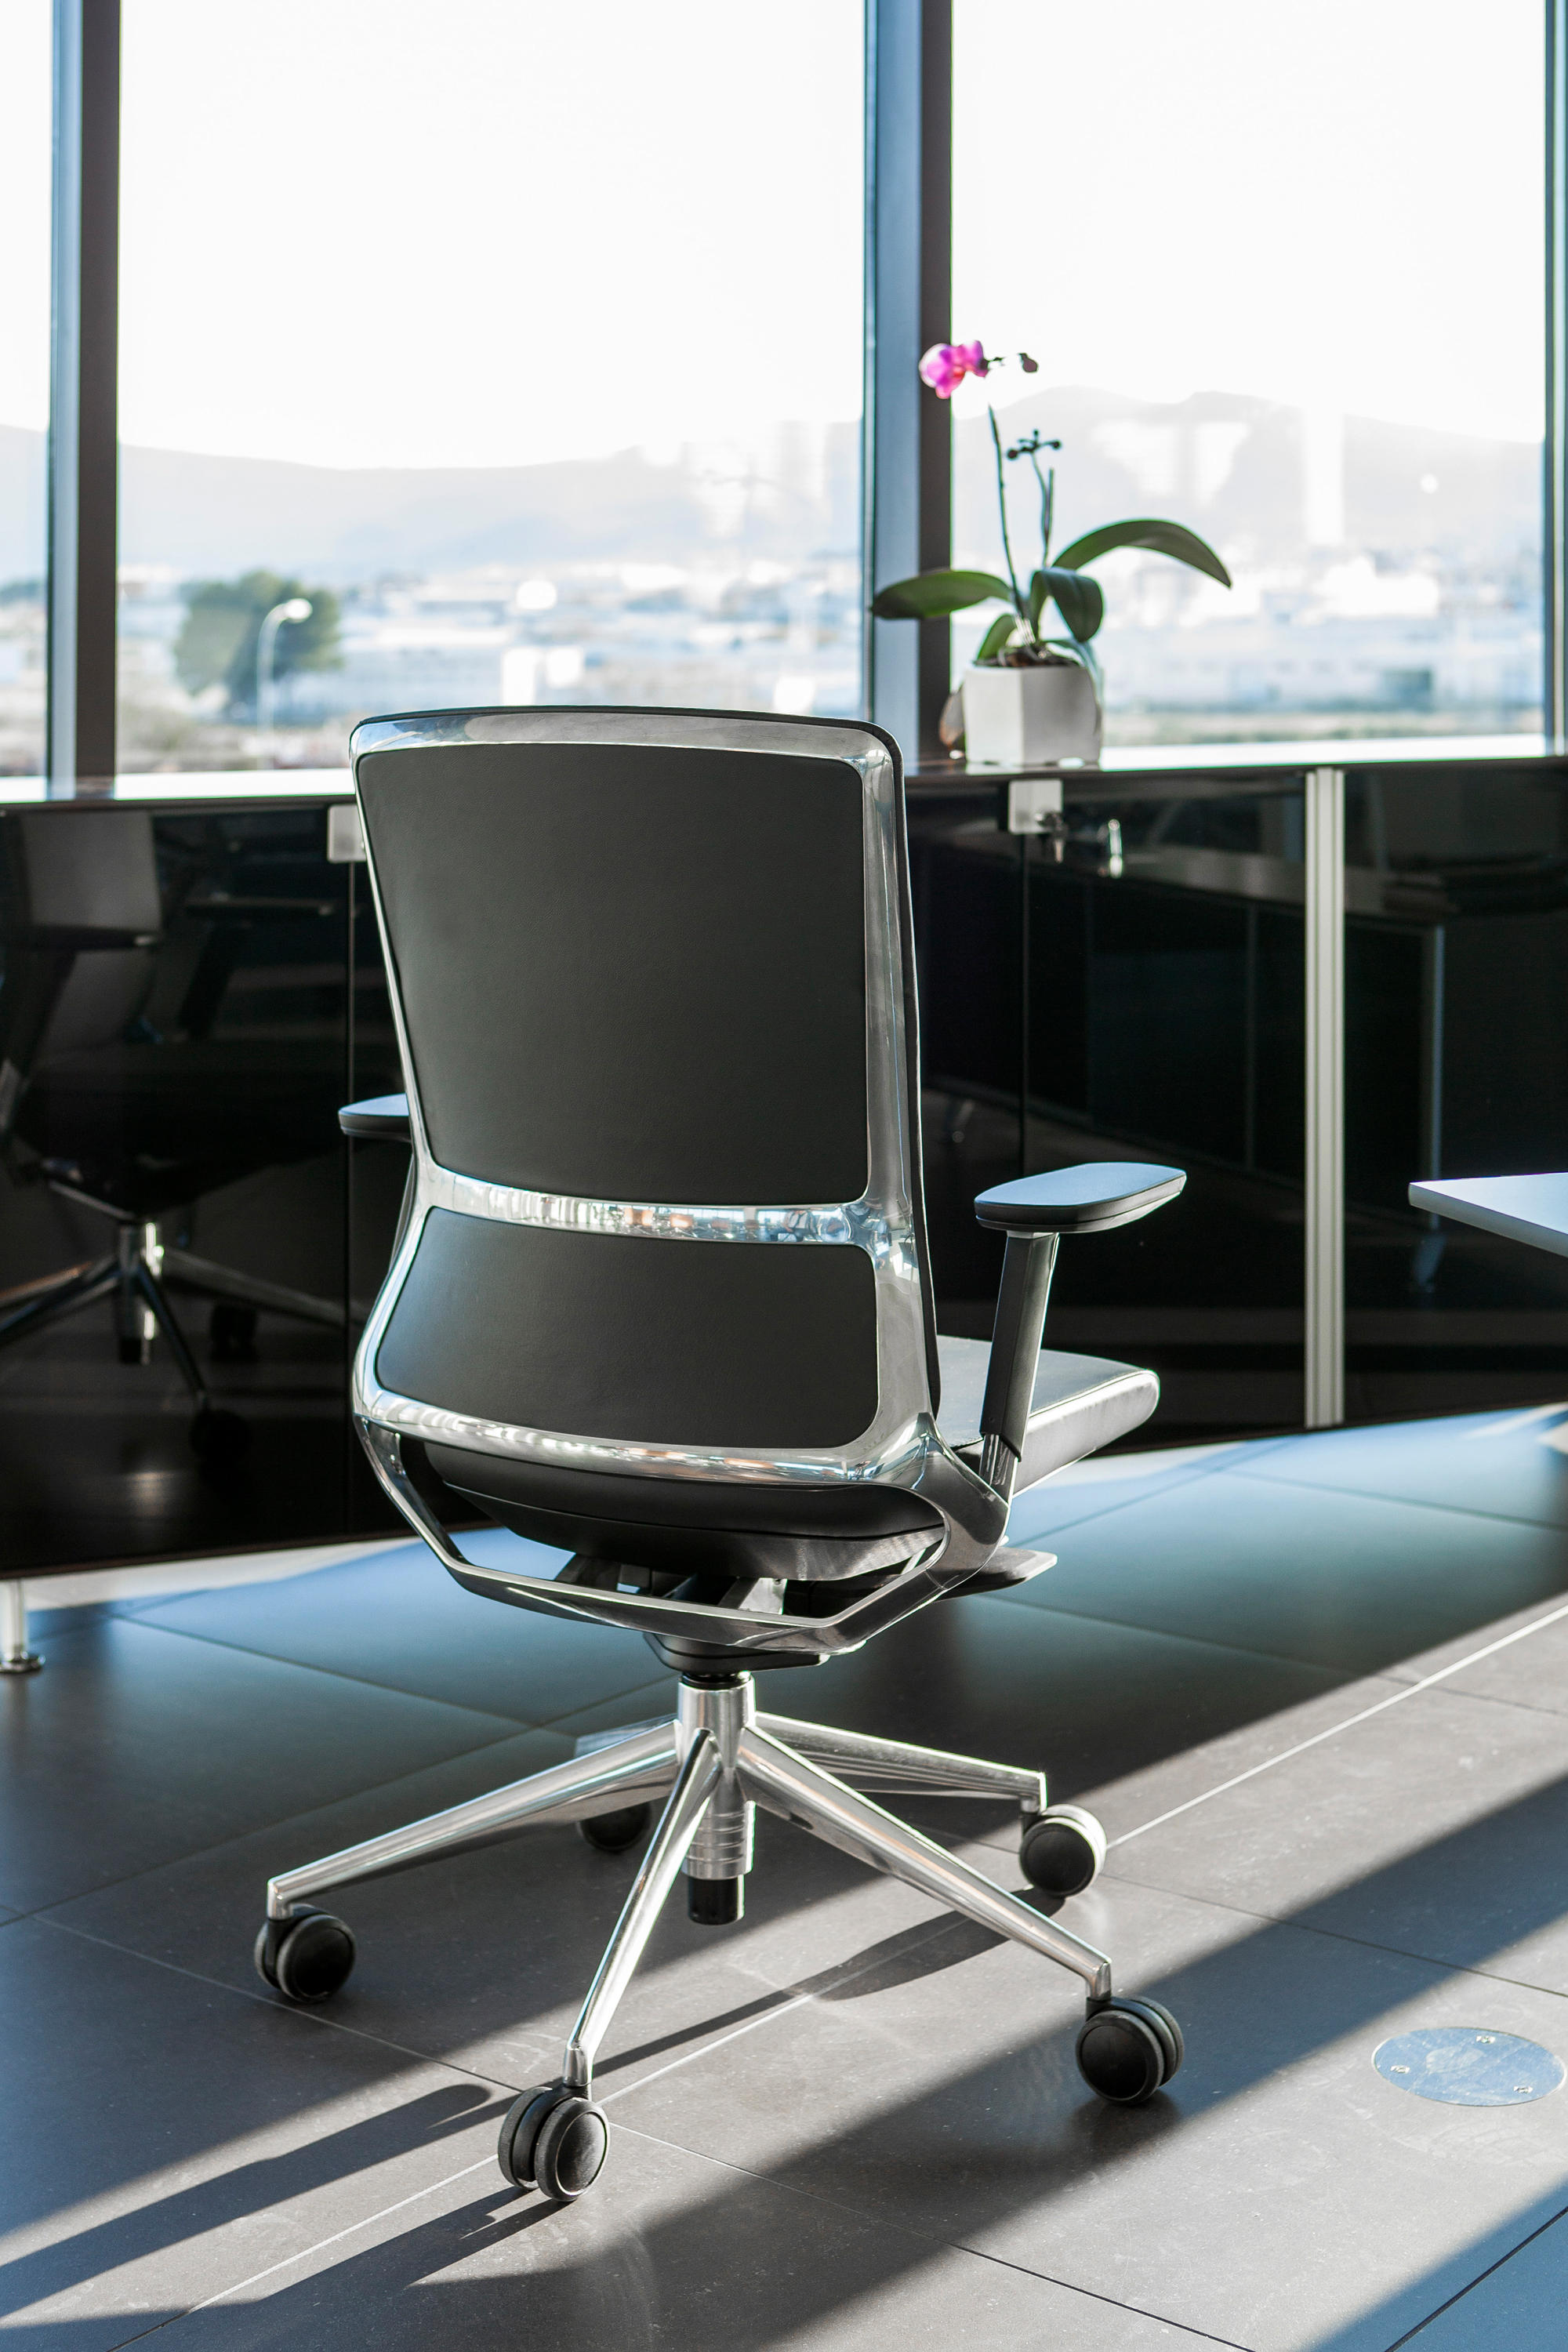 办公椅|布面职员椅|办公家具|中国有限公司官家具|TNK 500 职员椅系列